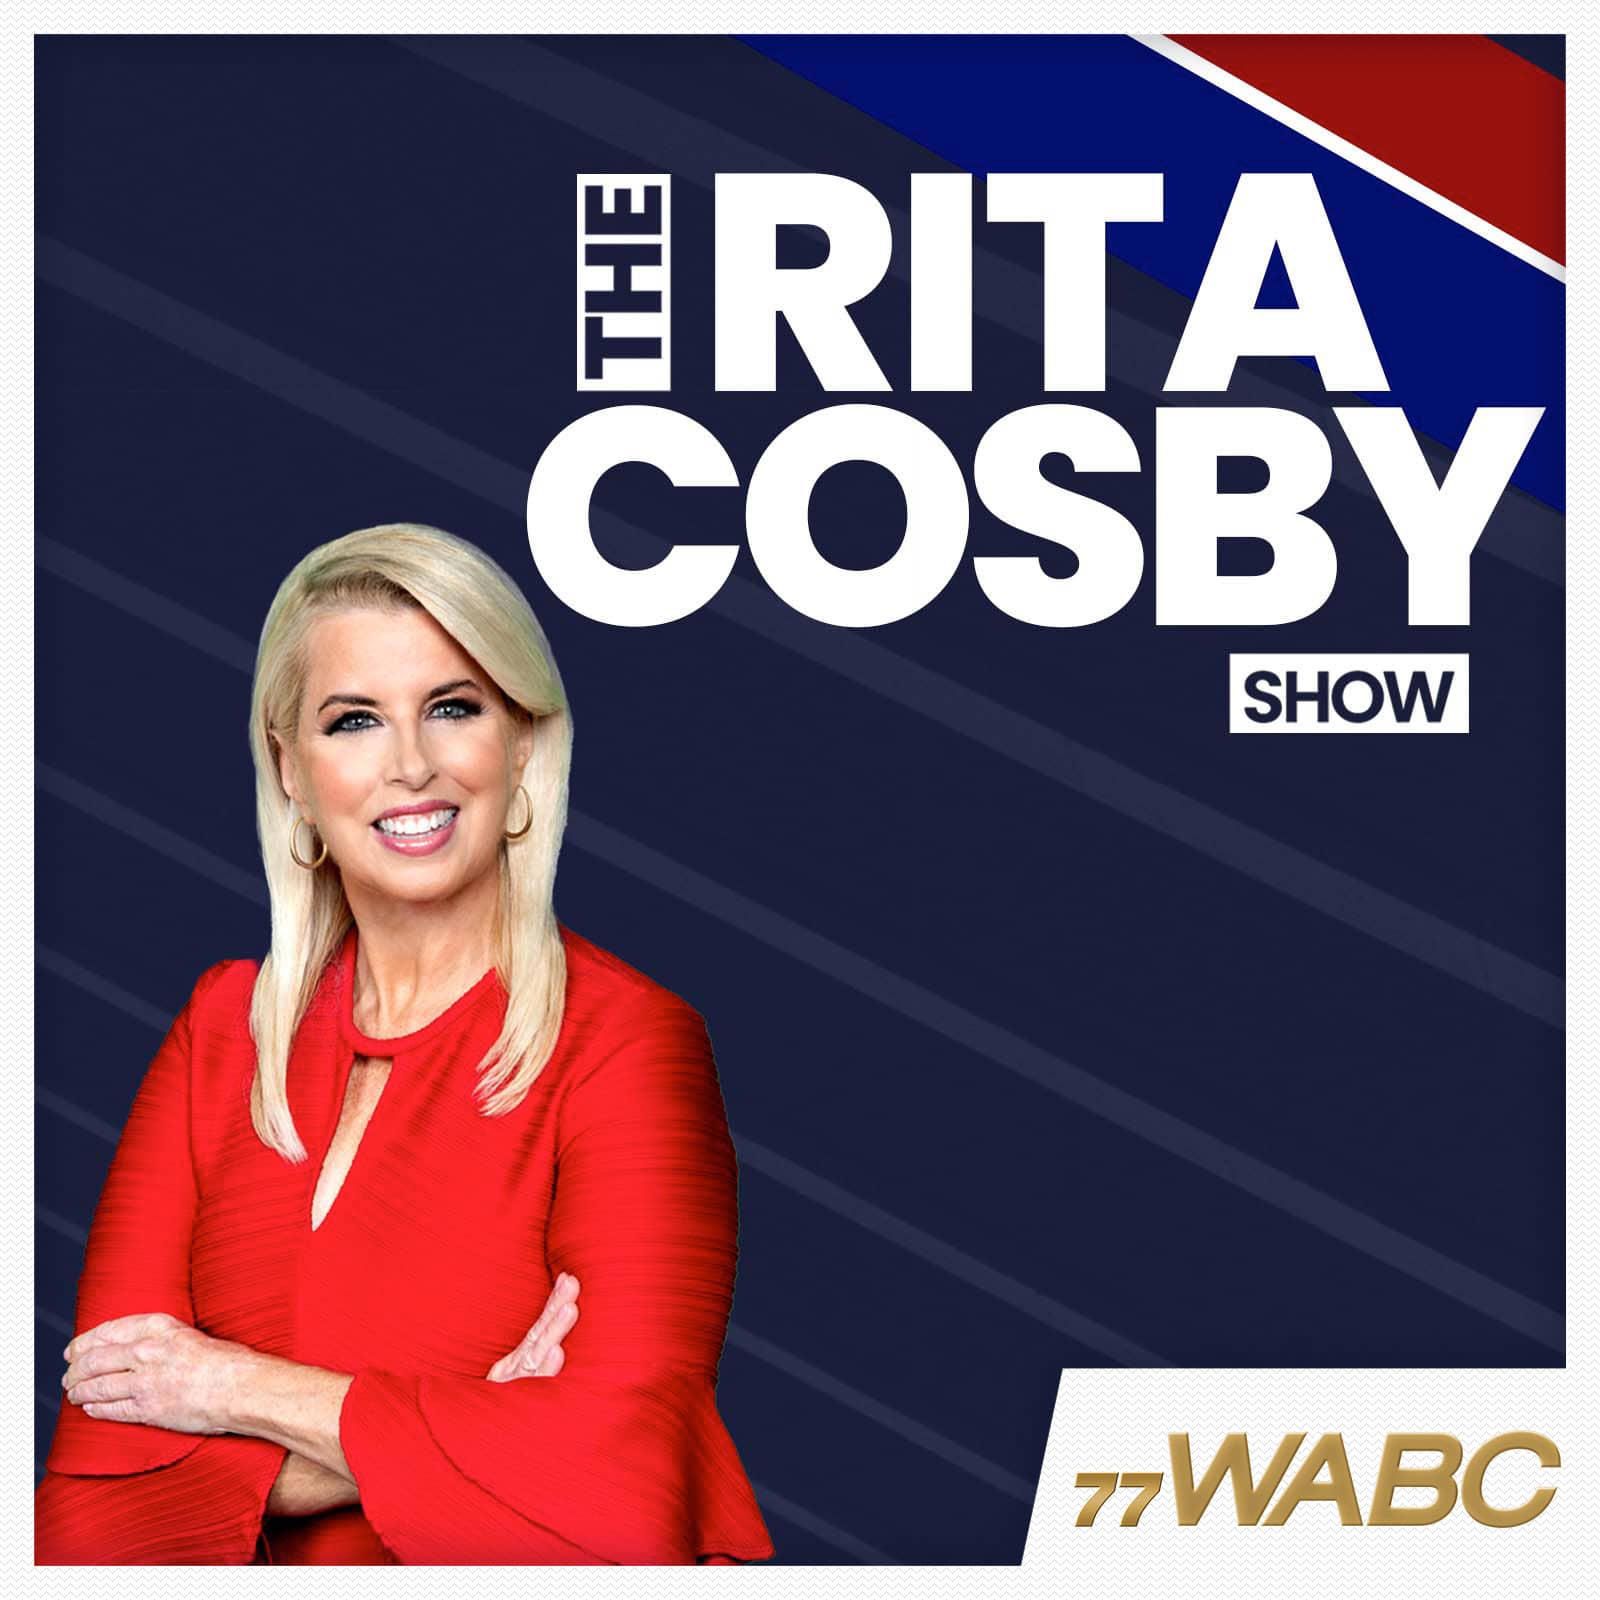 rita-cosby-podcast-new-logo486487